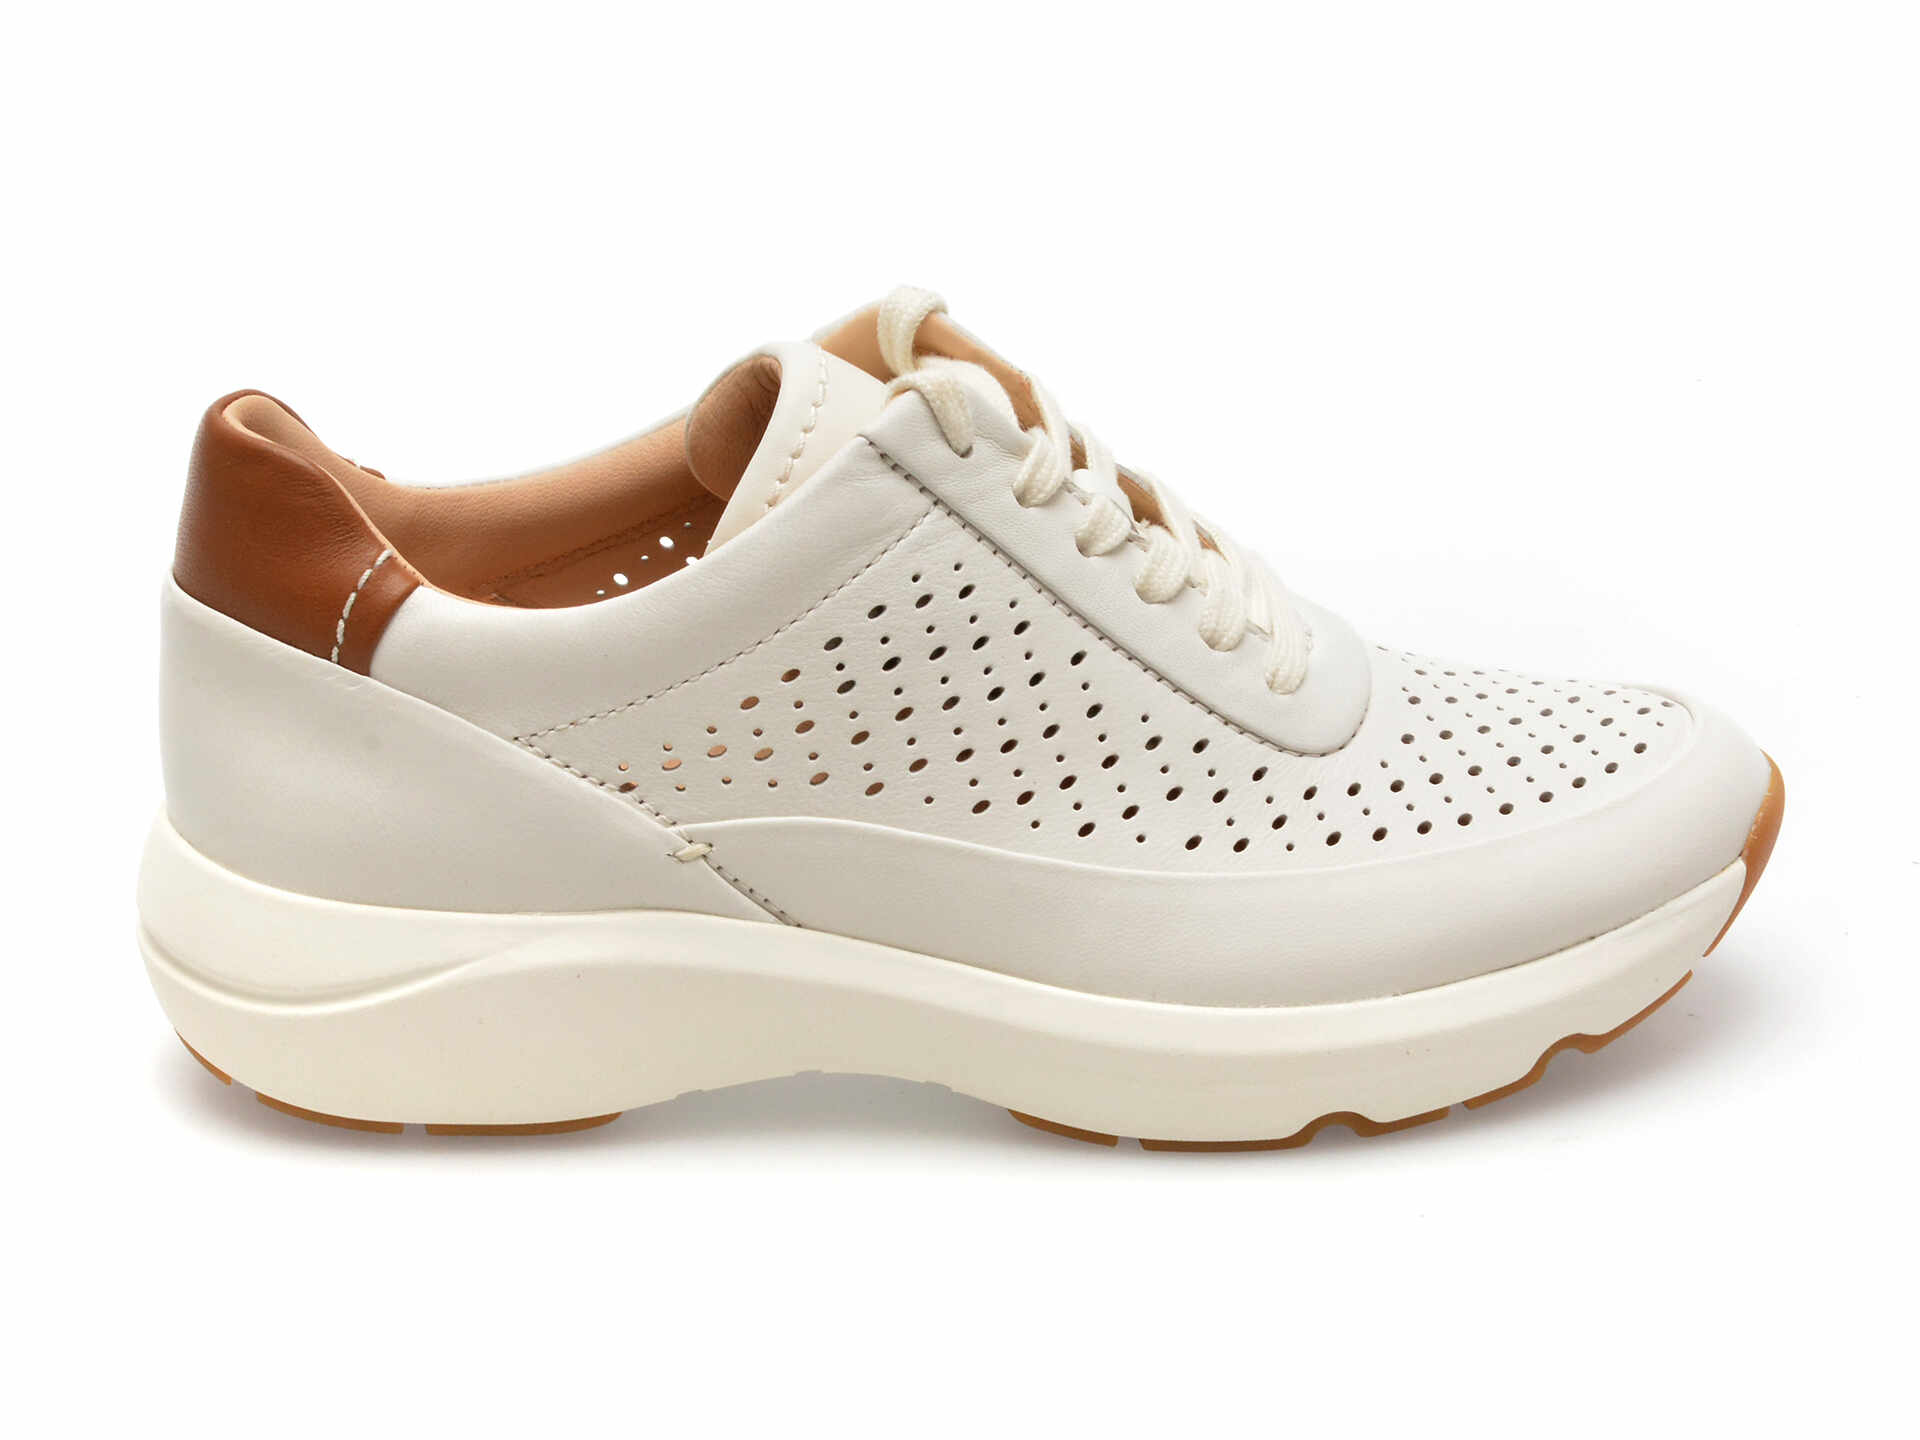 Pantofi sport CLARKS albi, TIVOLI GRACE, din piele naturala